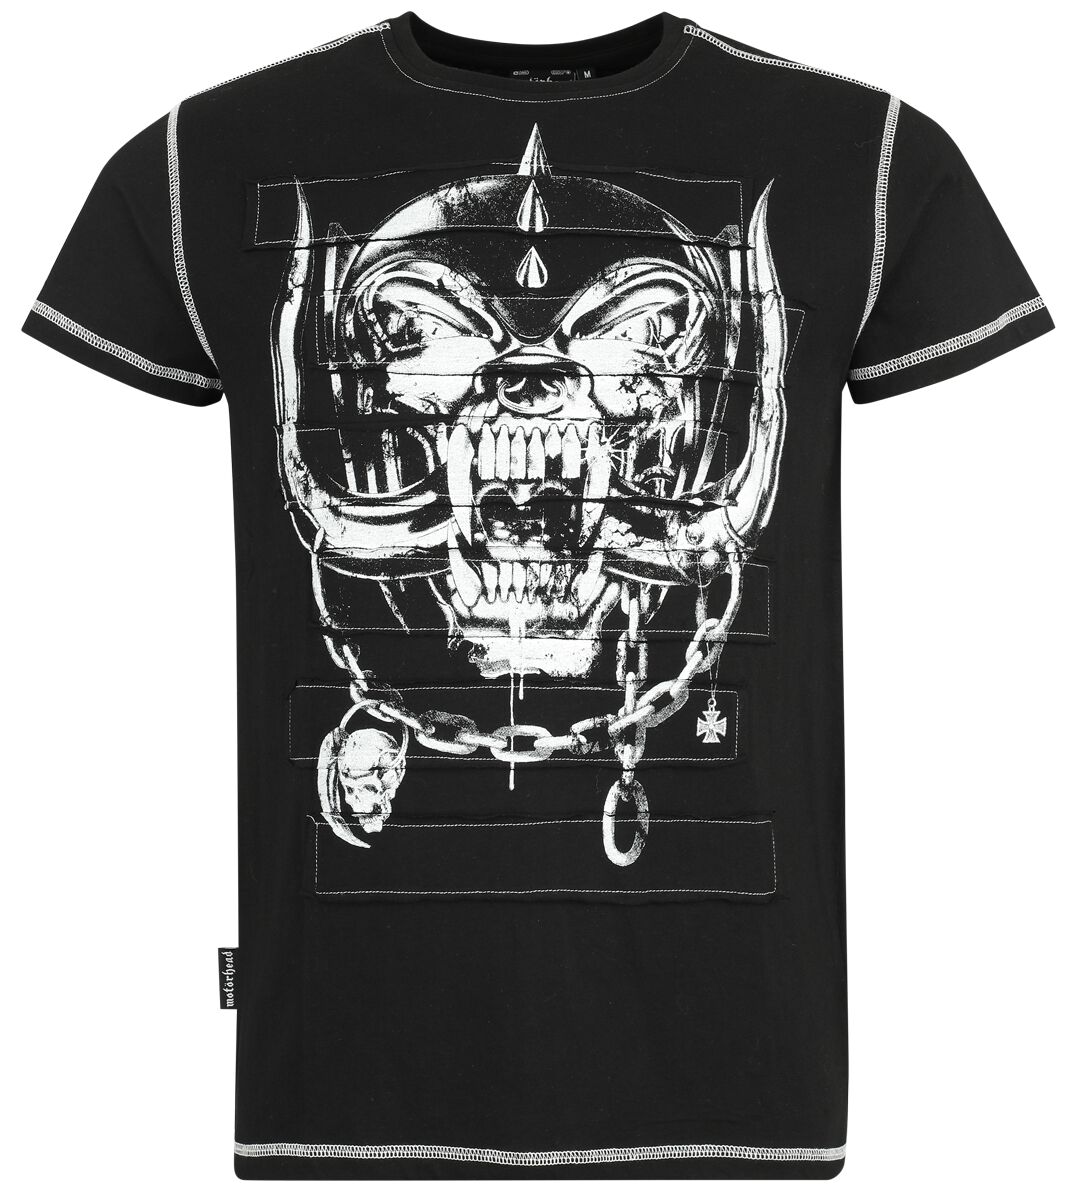 Motörhead T-Shirt - EMP Signature Collection - S bis 3XL - für Männer - Größe M - schwarz  - Lizenziertes Merchandise!